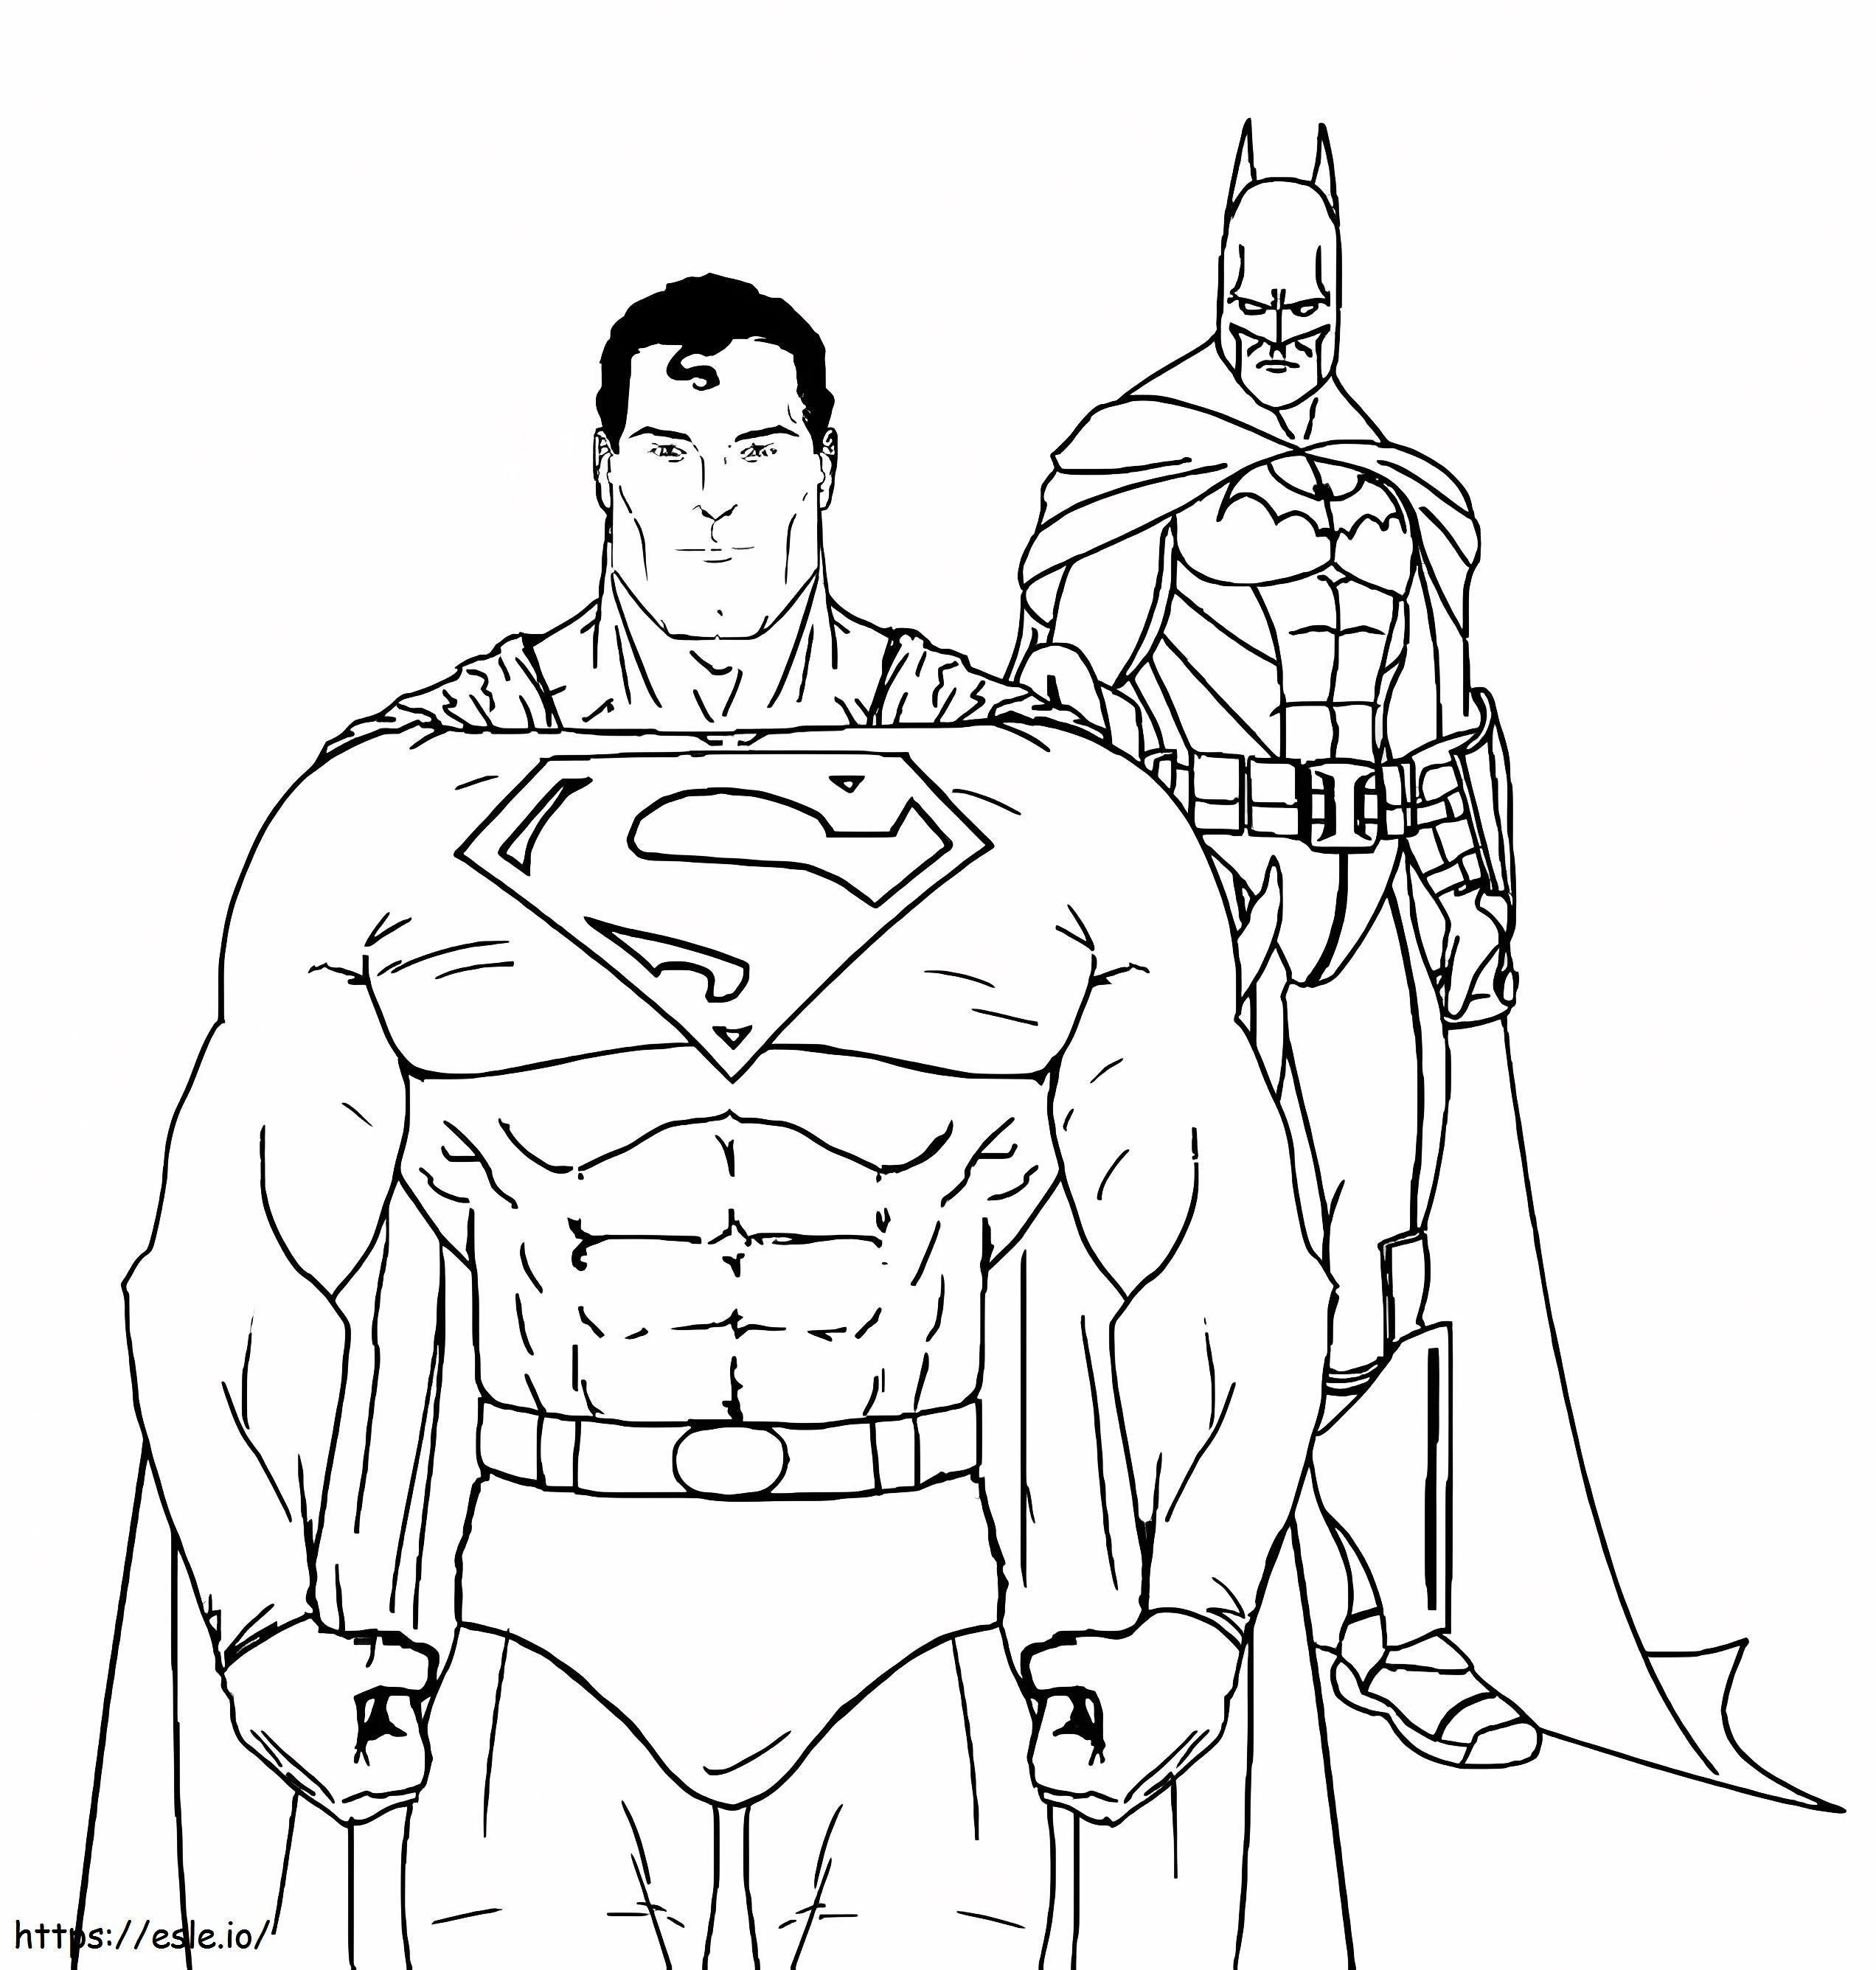 Supermana i Batmana kolorowanka